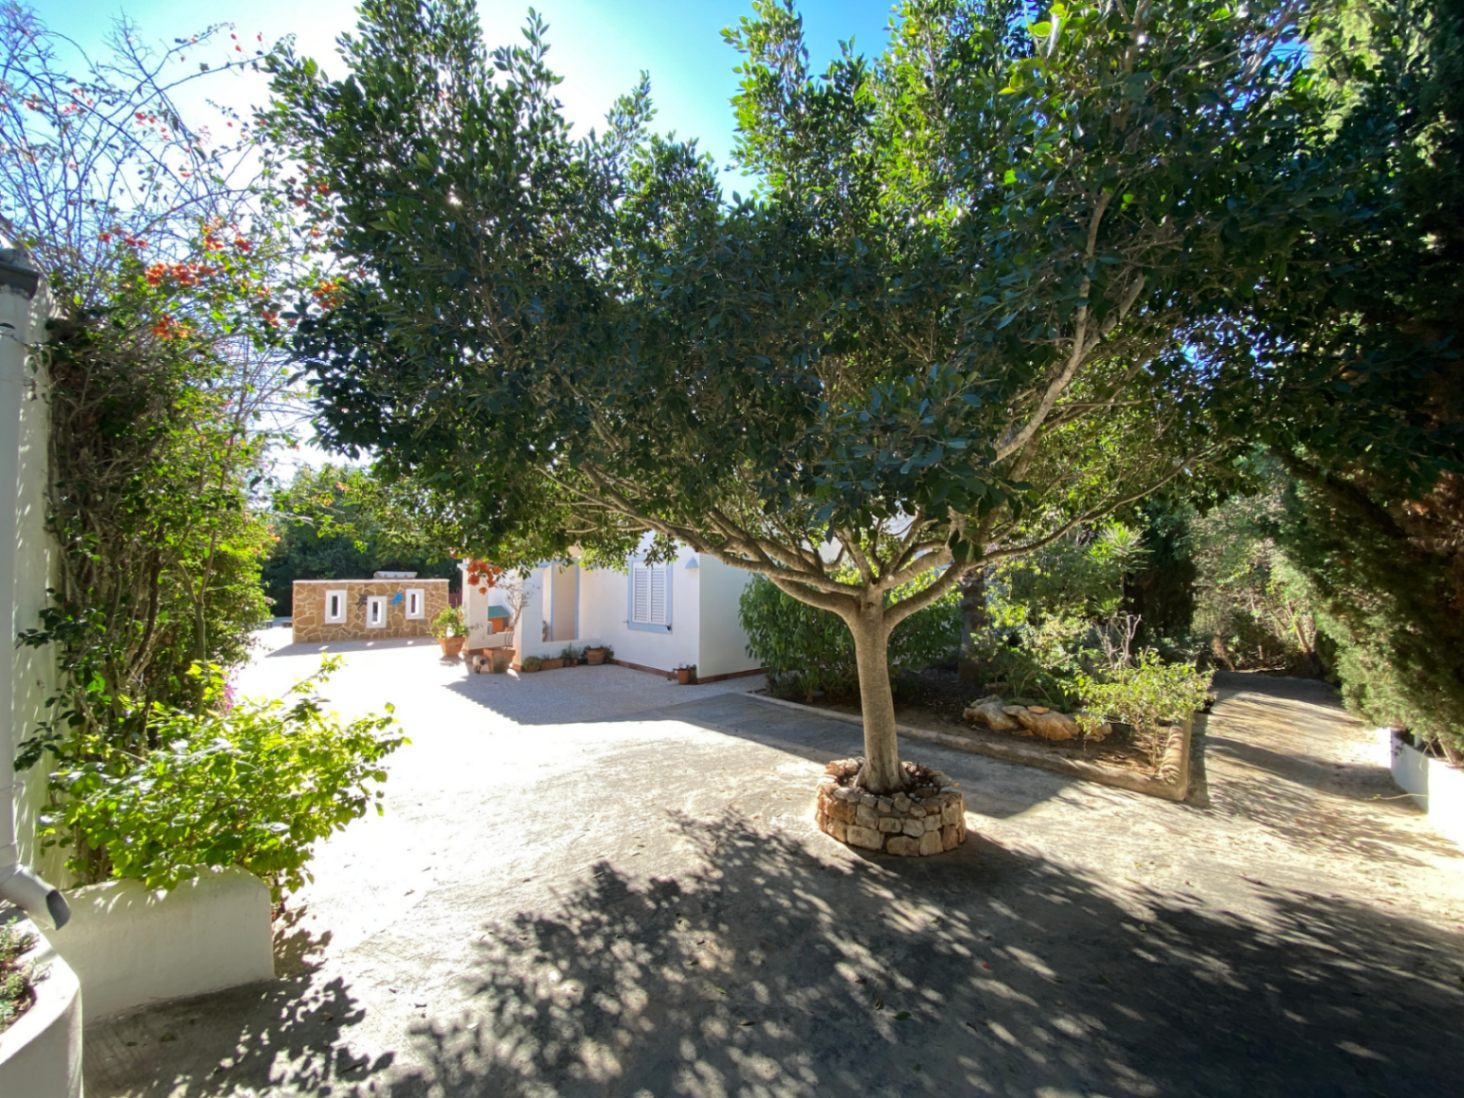 Maison de campagne dans un endroit très calme et privé, entre Ibiza et Santa Eulalia